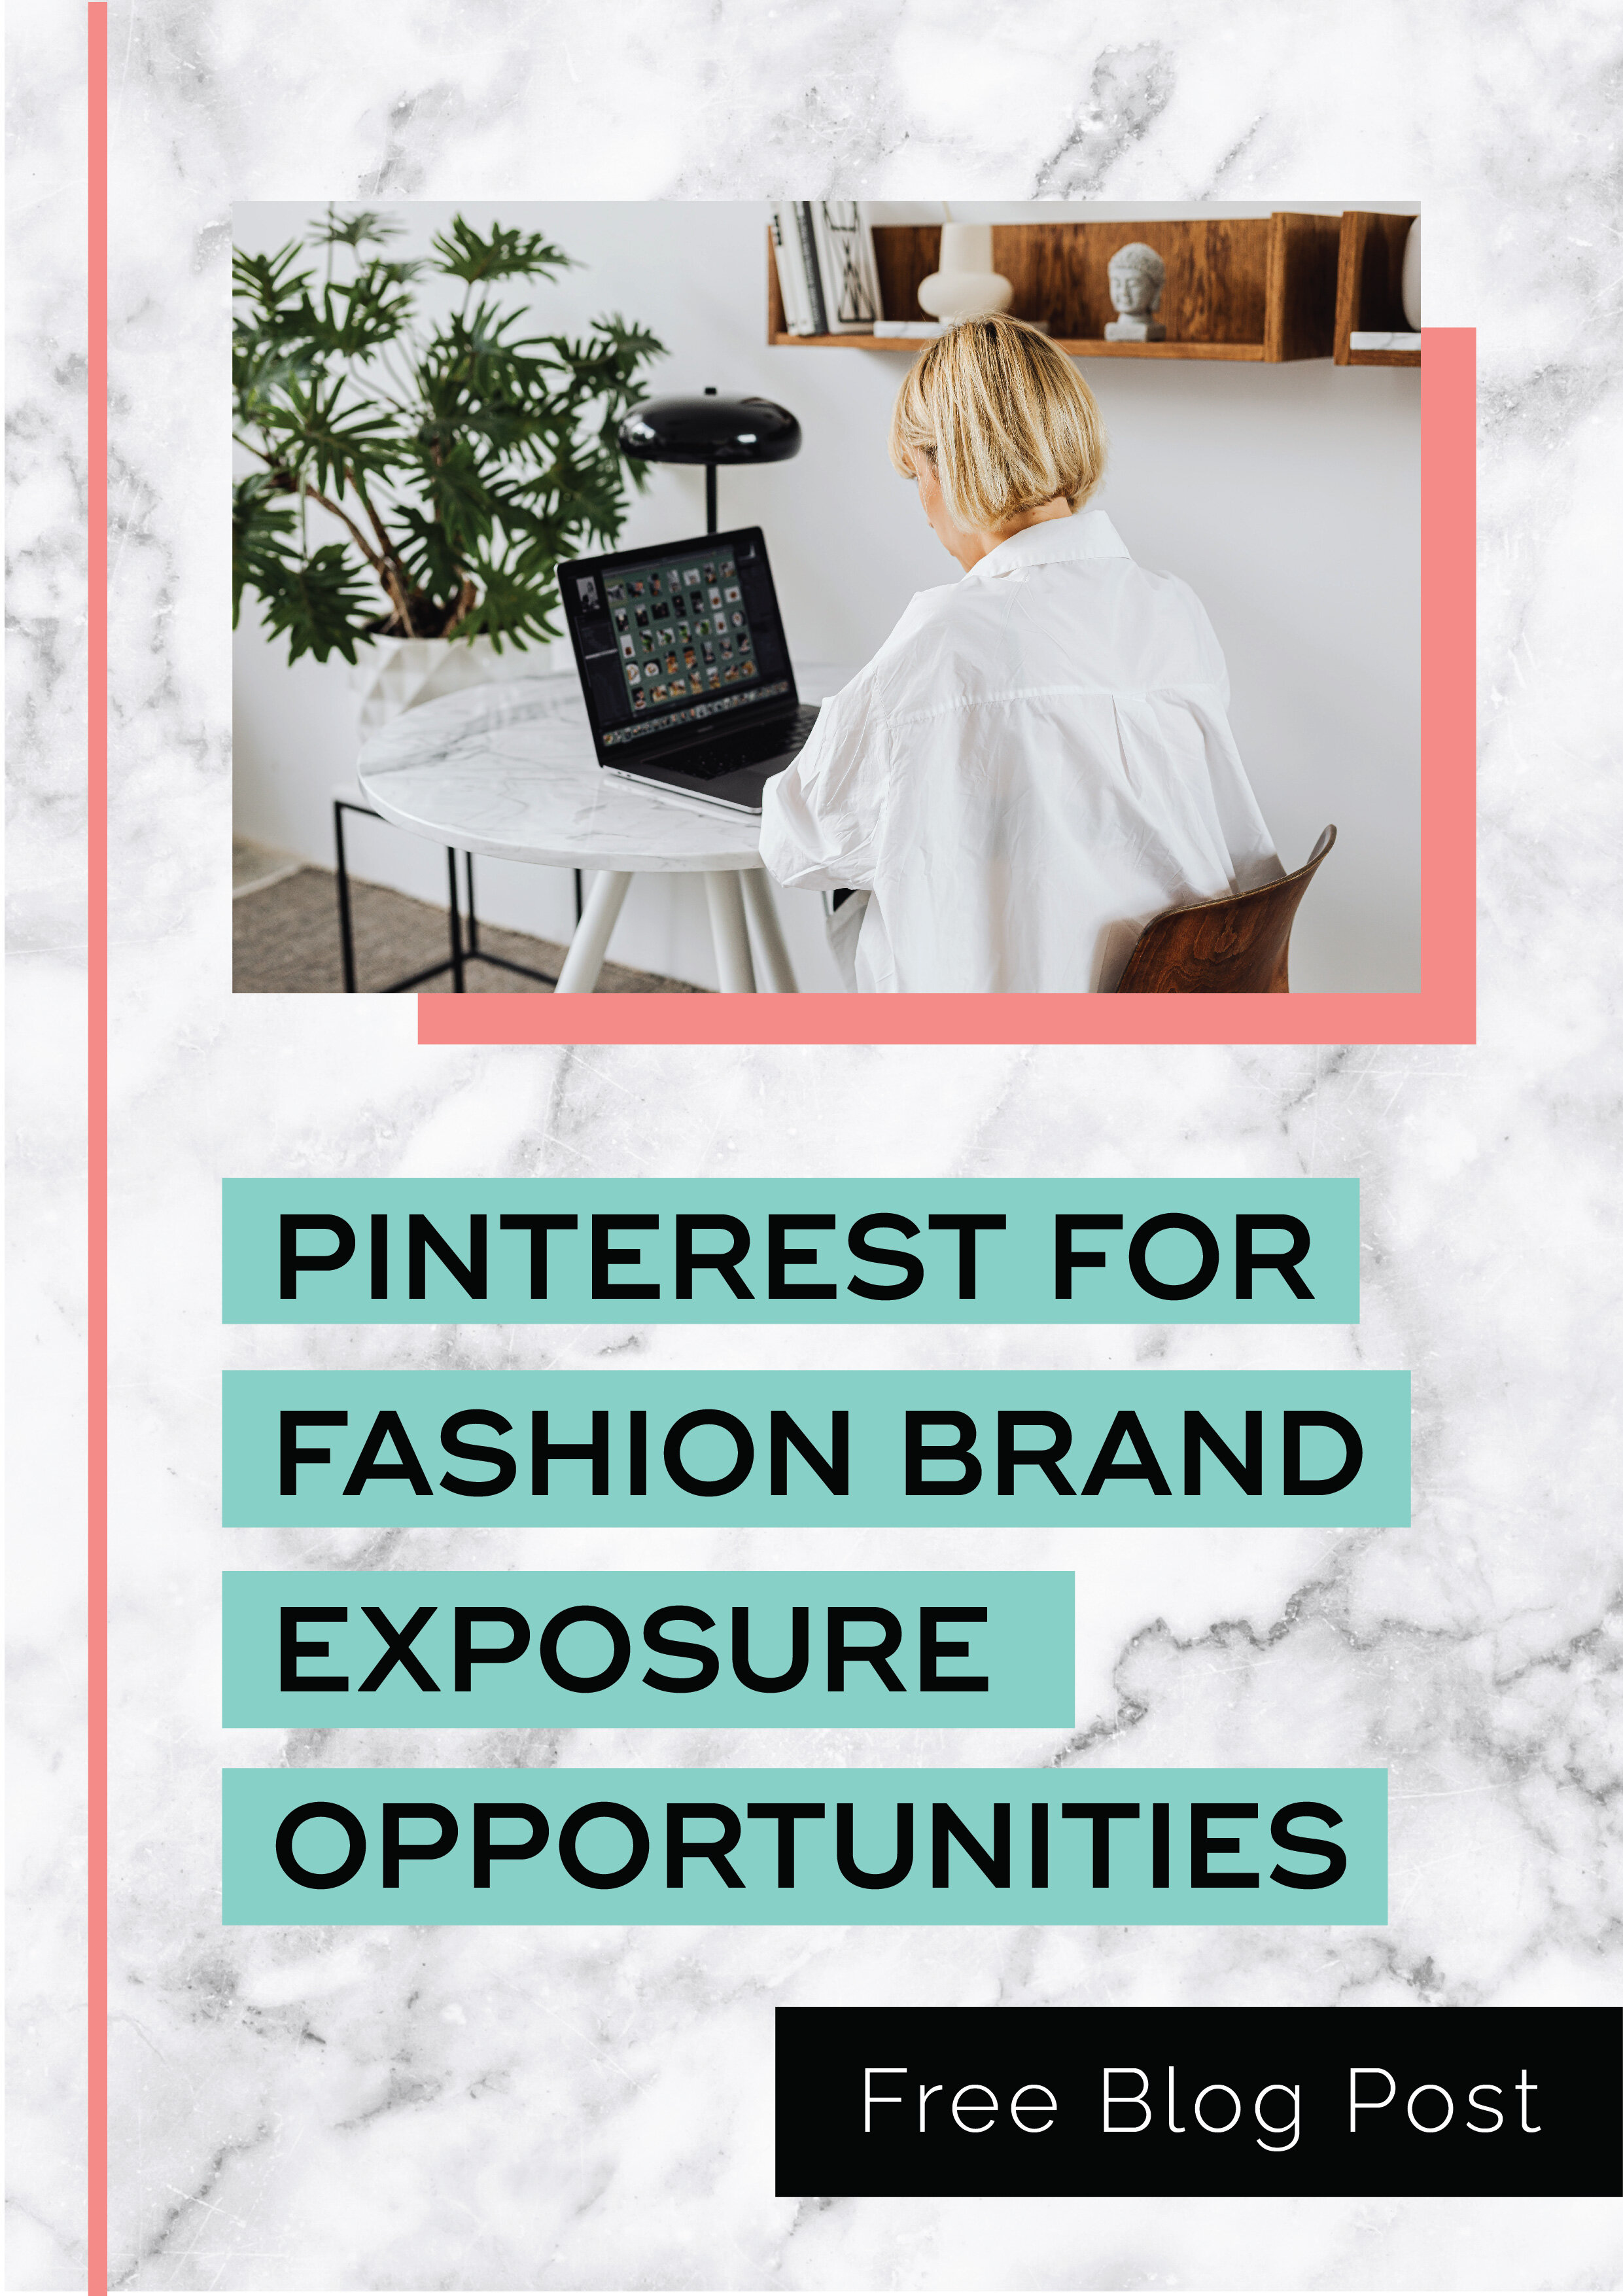 Pinterest for Fashion Brand Exposure Opportunities2.jpg